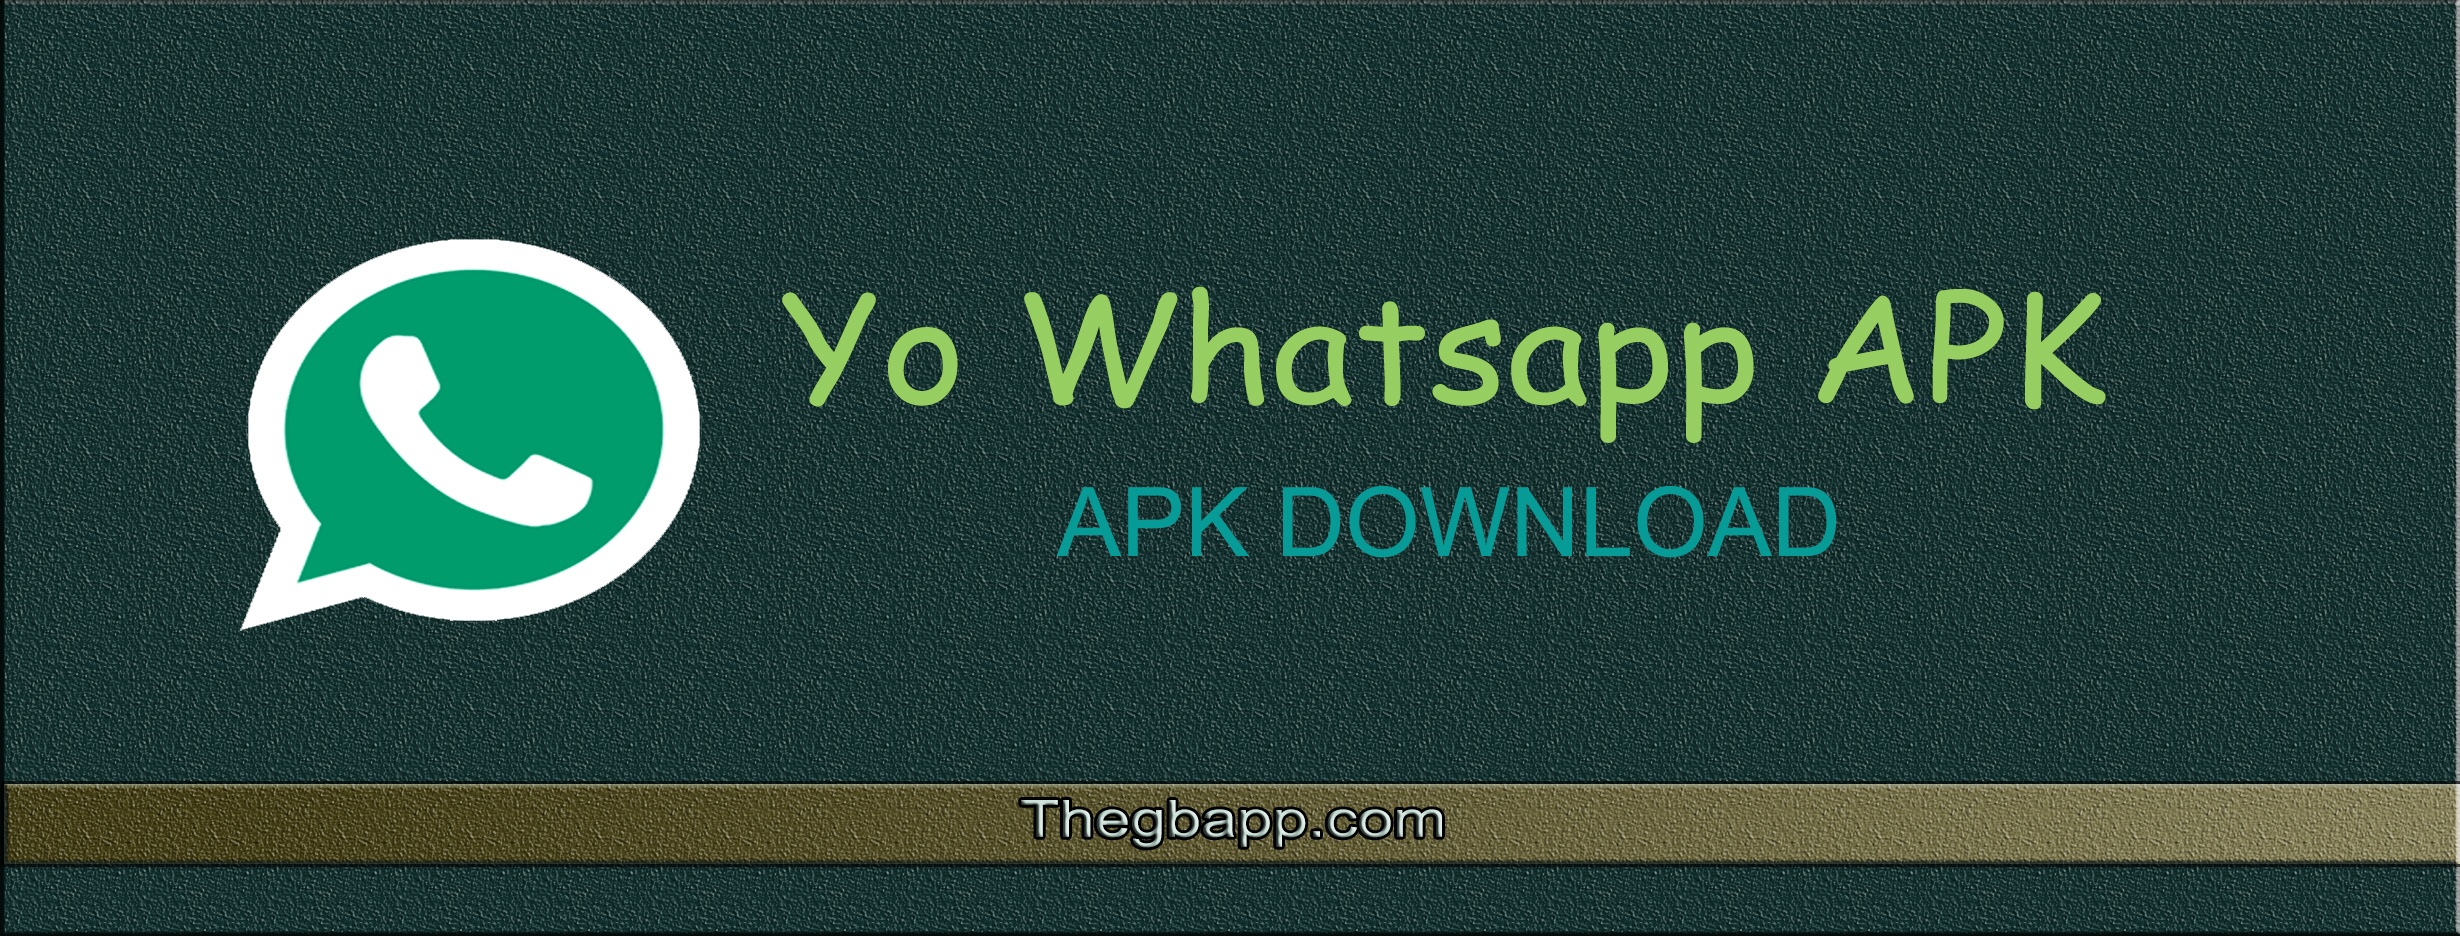 App yowhatsapp apk download yo whatsapp download